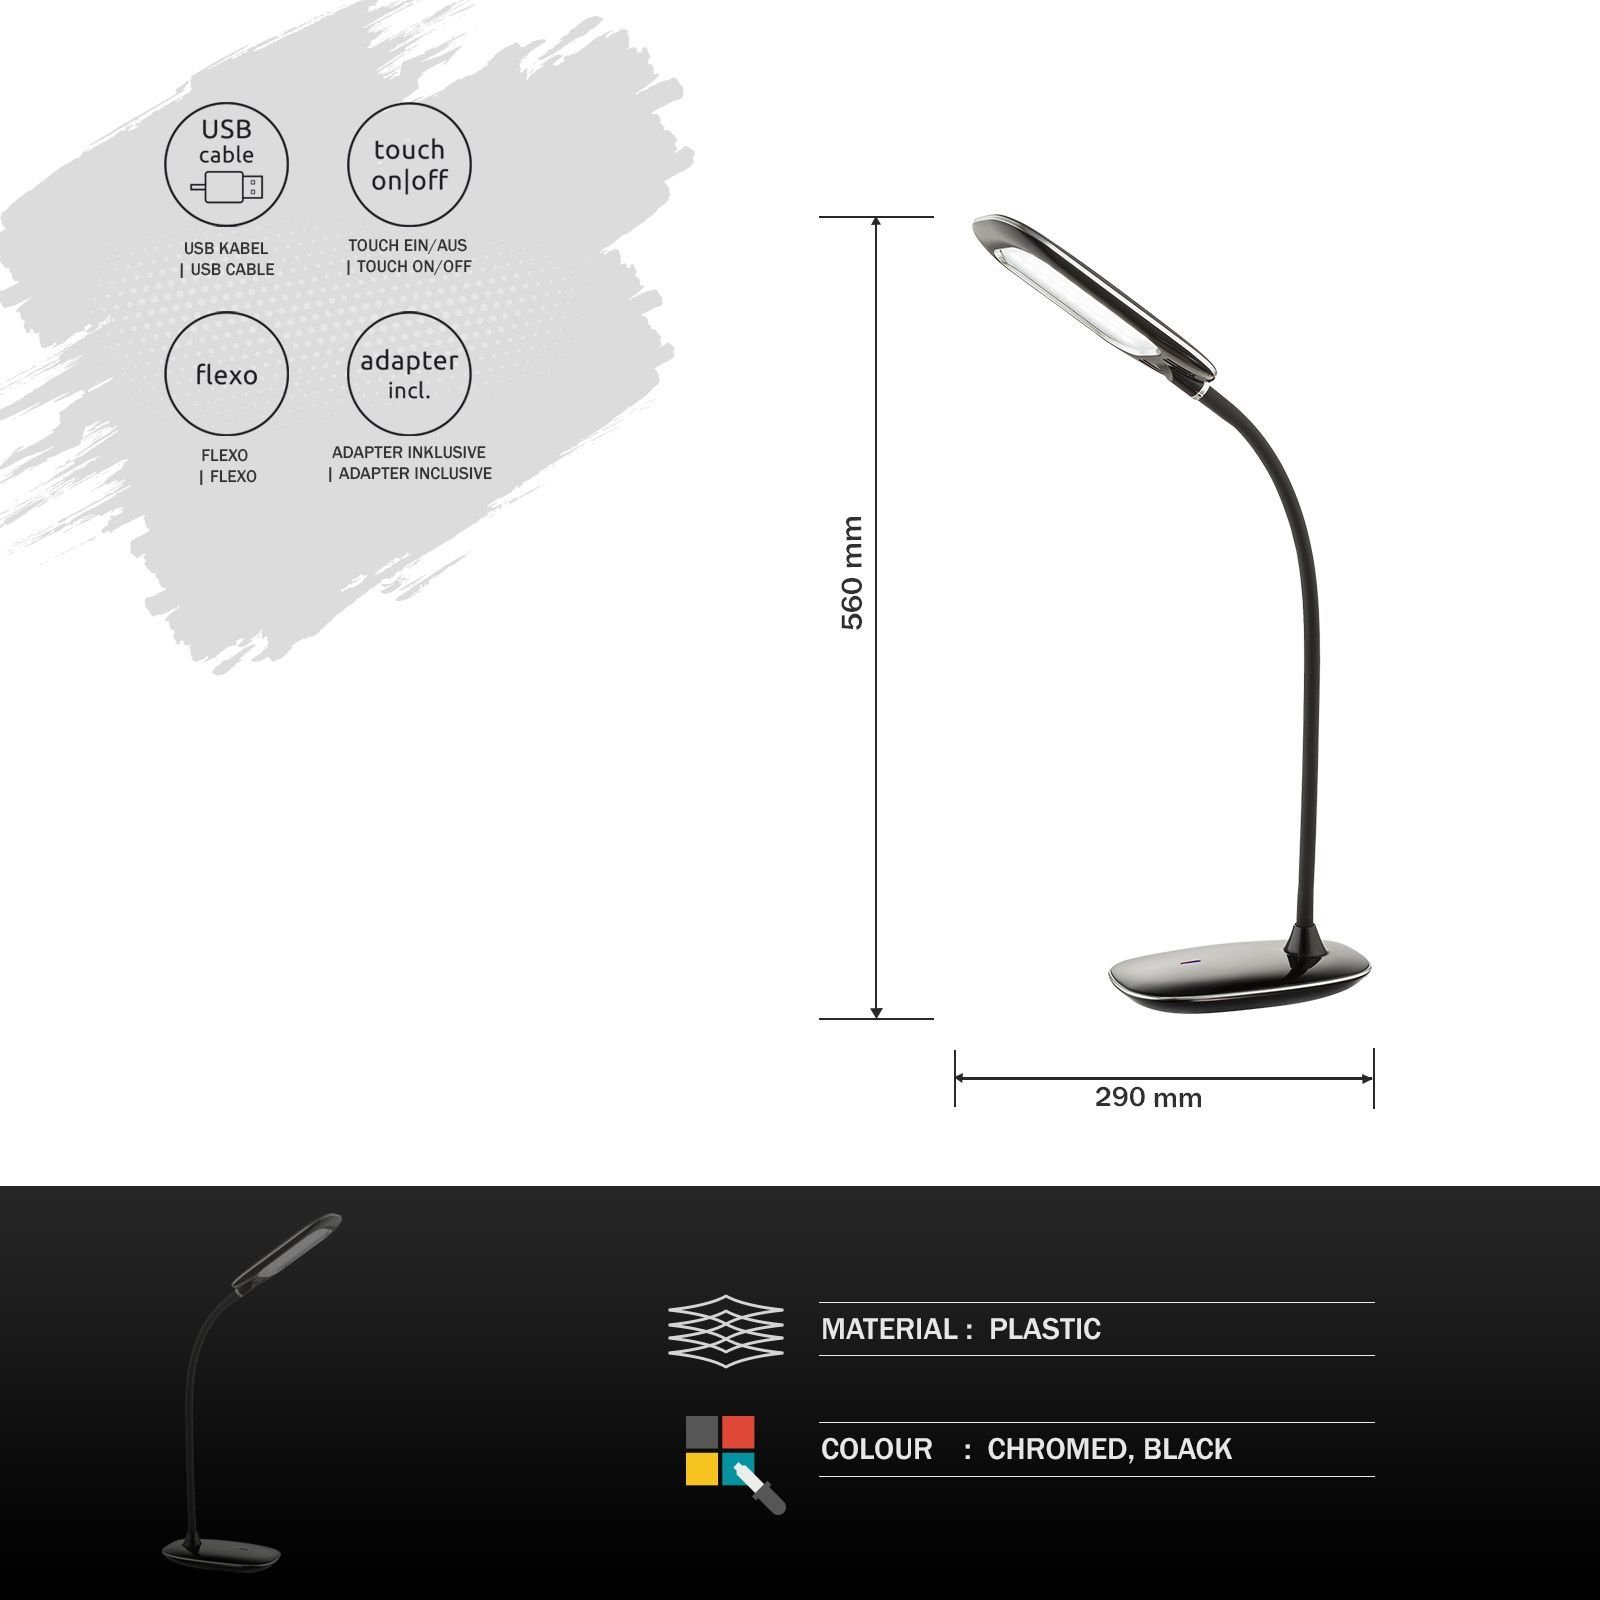 GLOBO Tischleuchte Tischlampe Tischleuchte schwarz Schreibtischlampe Touch Globo LED